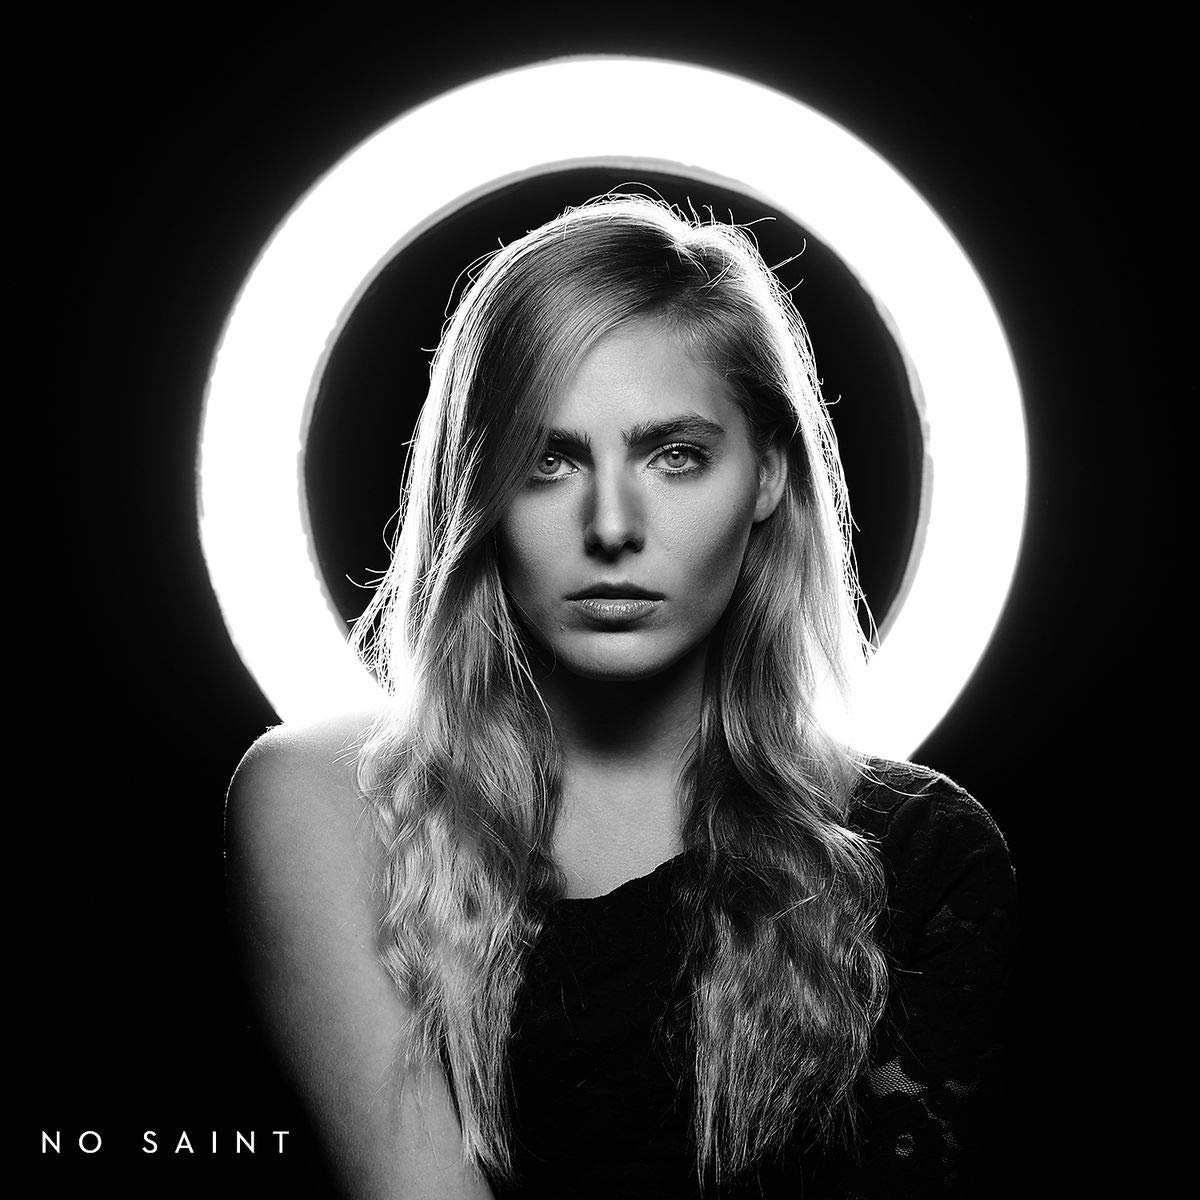 Lauren Jenkins: guarda il video di "No Saint", dal debutto discografico su etichetta Big Machine